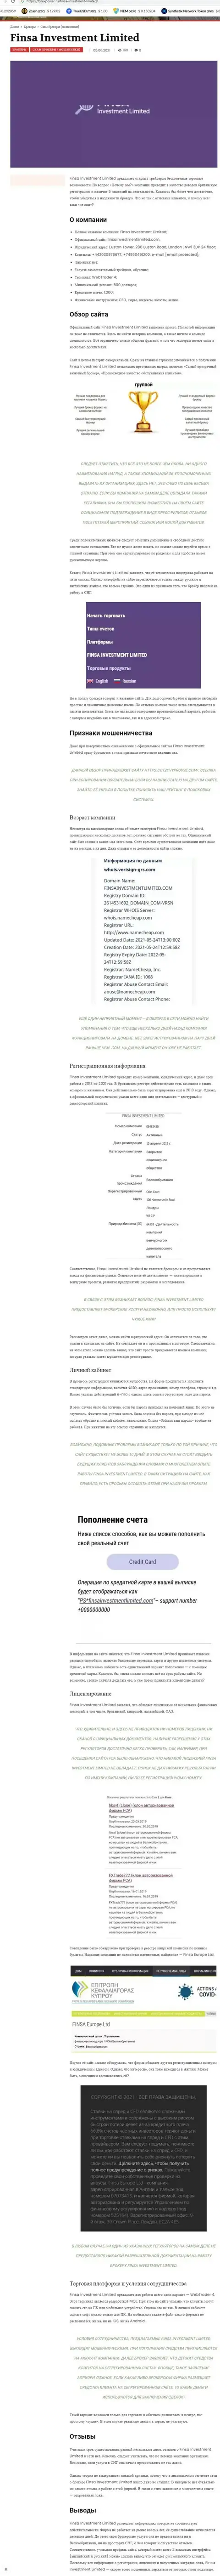 Финса - МОШЕННИК !!! Отзывы и подтверждения мошеннических действий в обзорной статье